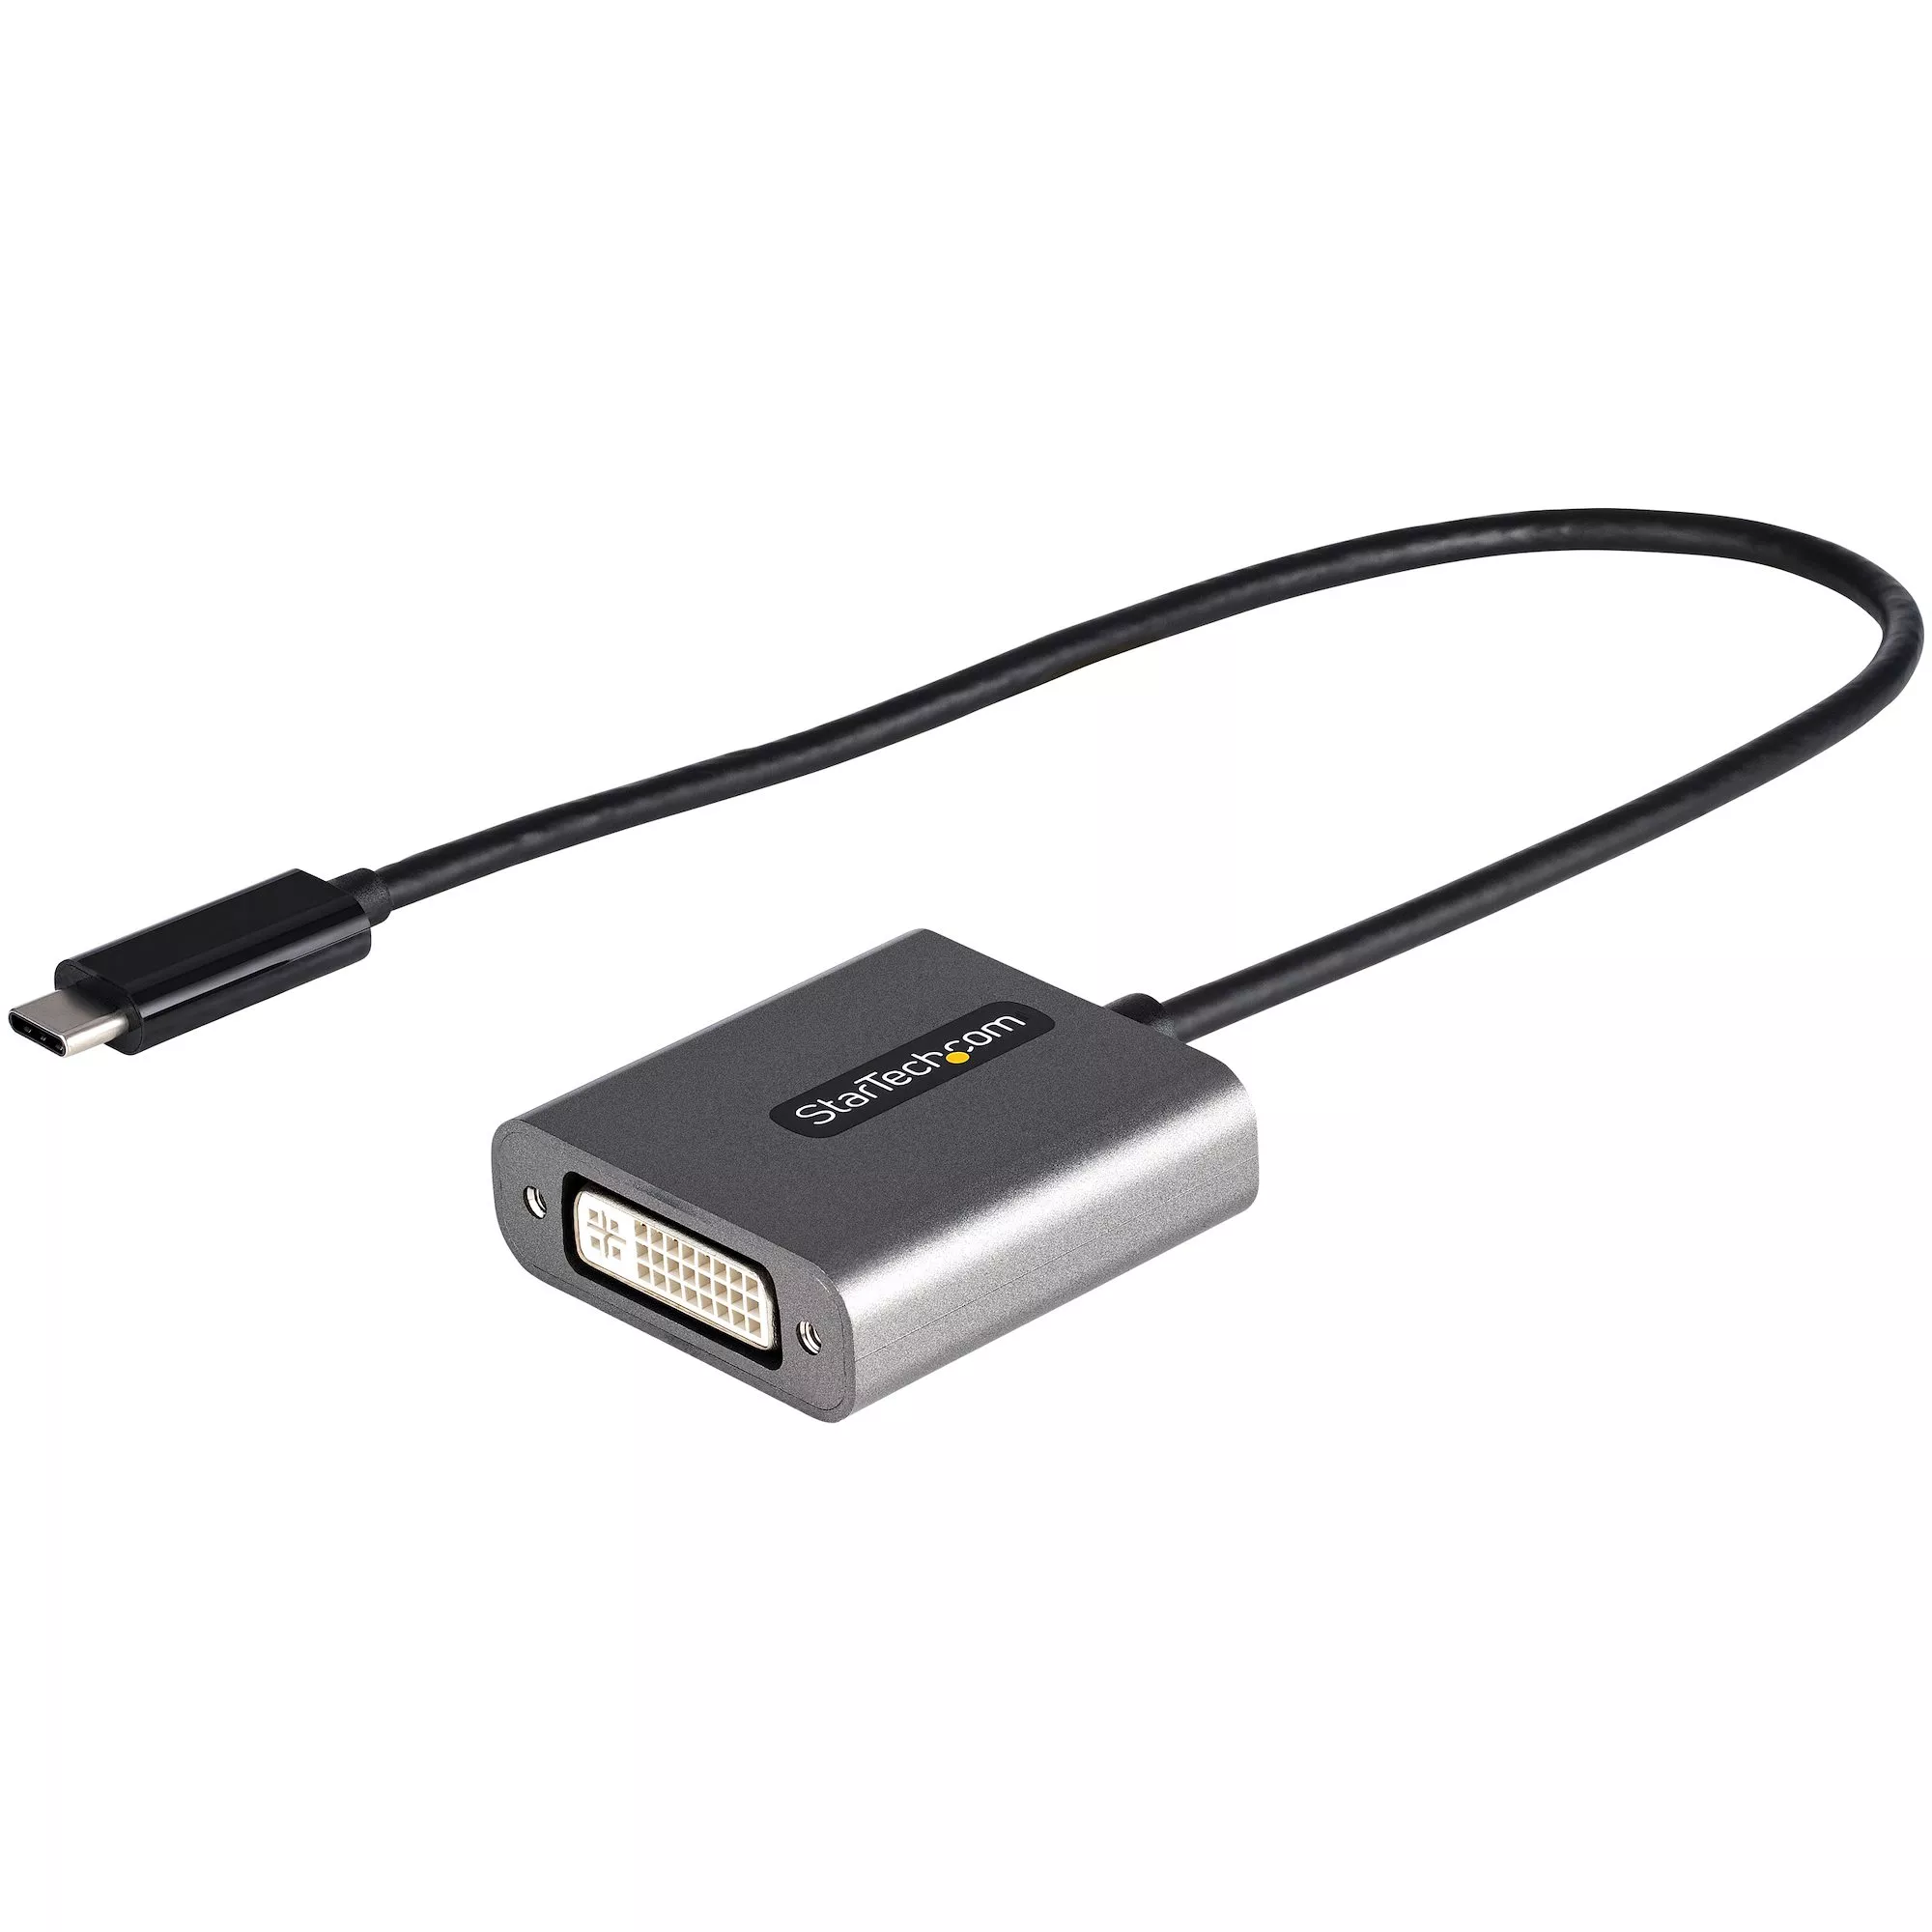 Revendeur officiel StarTech.com Adaptateur USB C vers DVI - Adaptateur